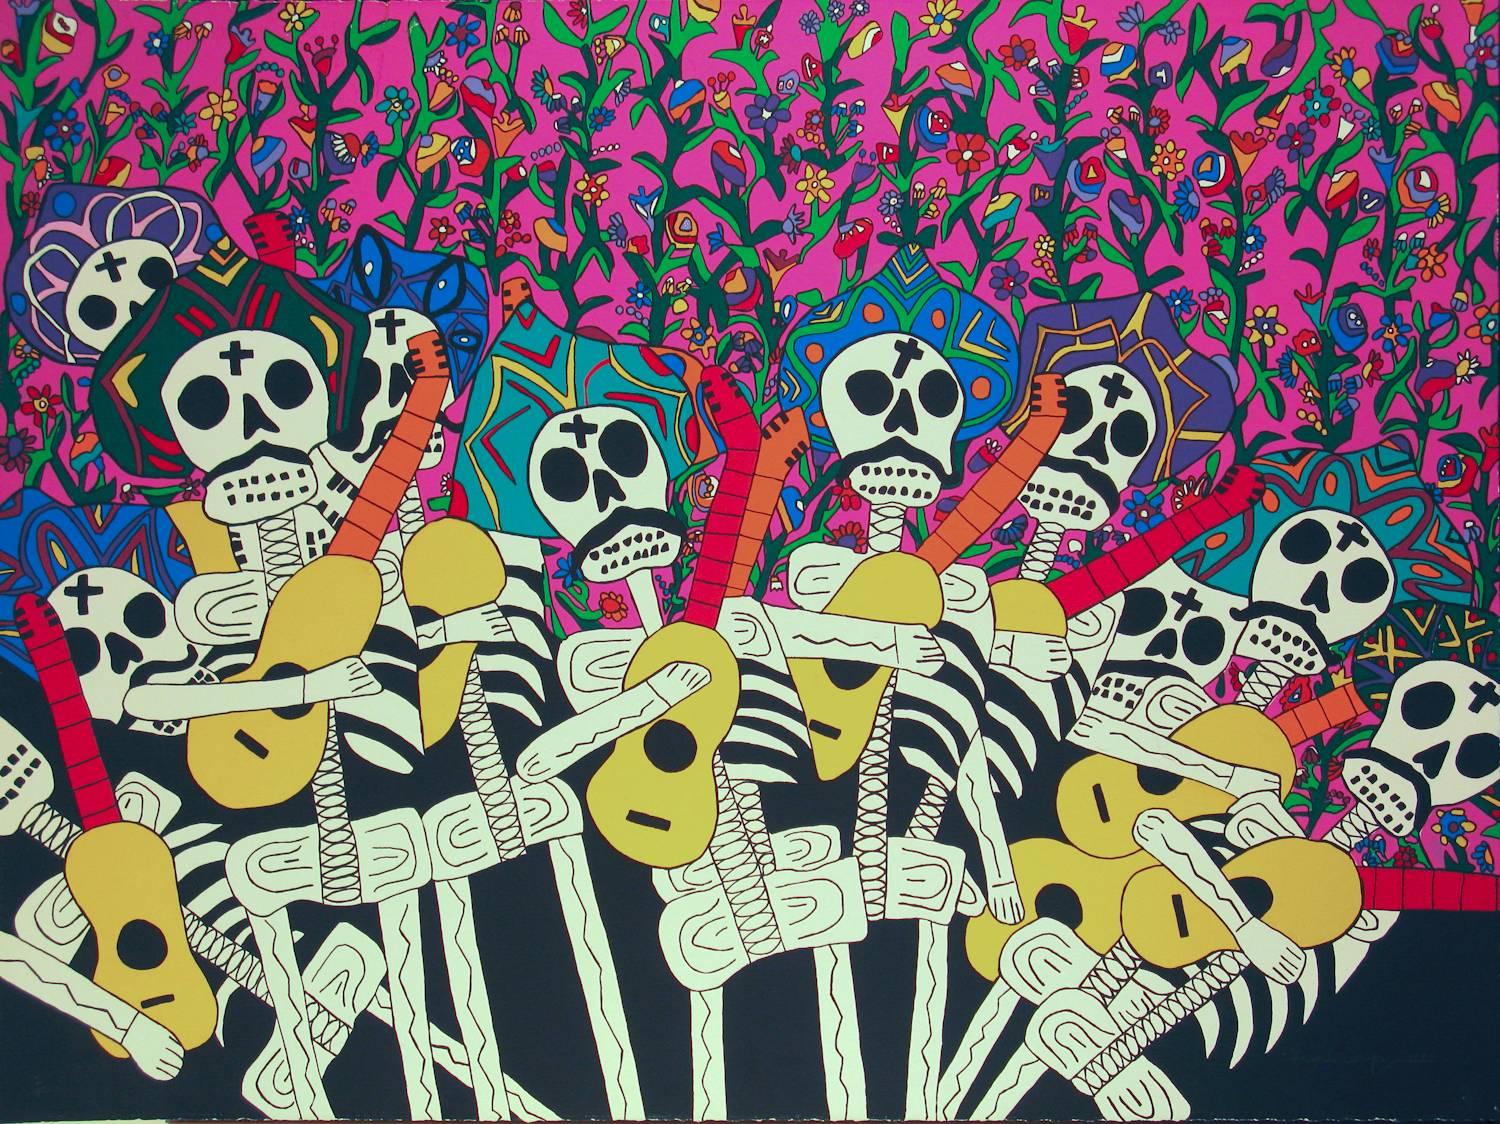 Hechale, Eduardo Oropeza, Skelettband, rosa, rot, weiß, schwarz, Tag des Toten